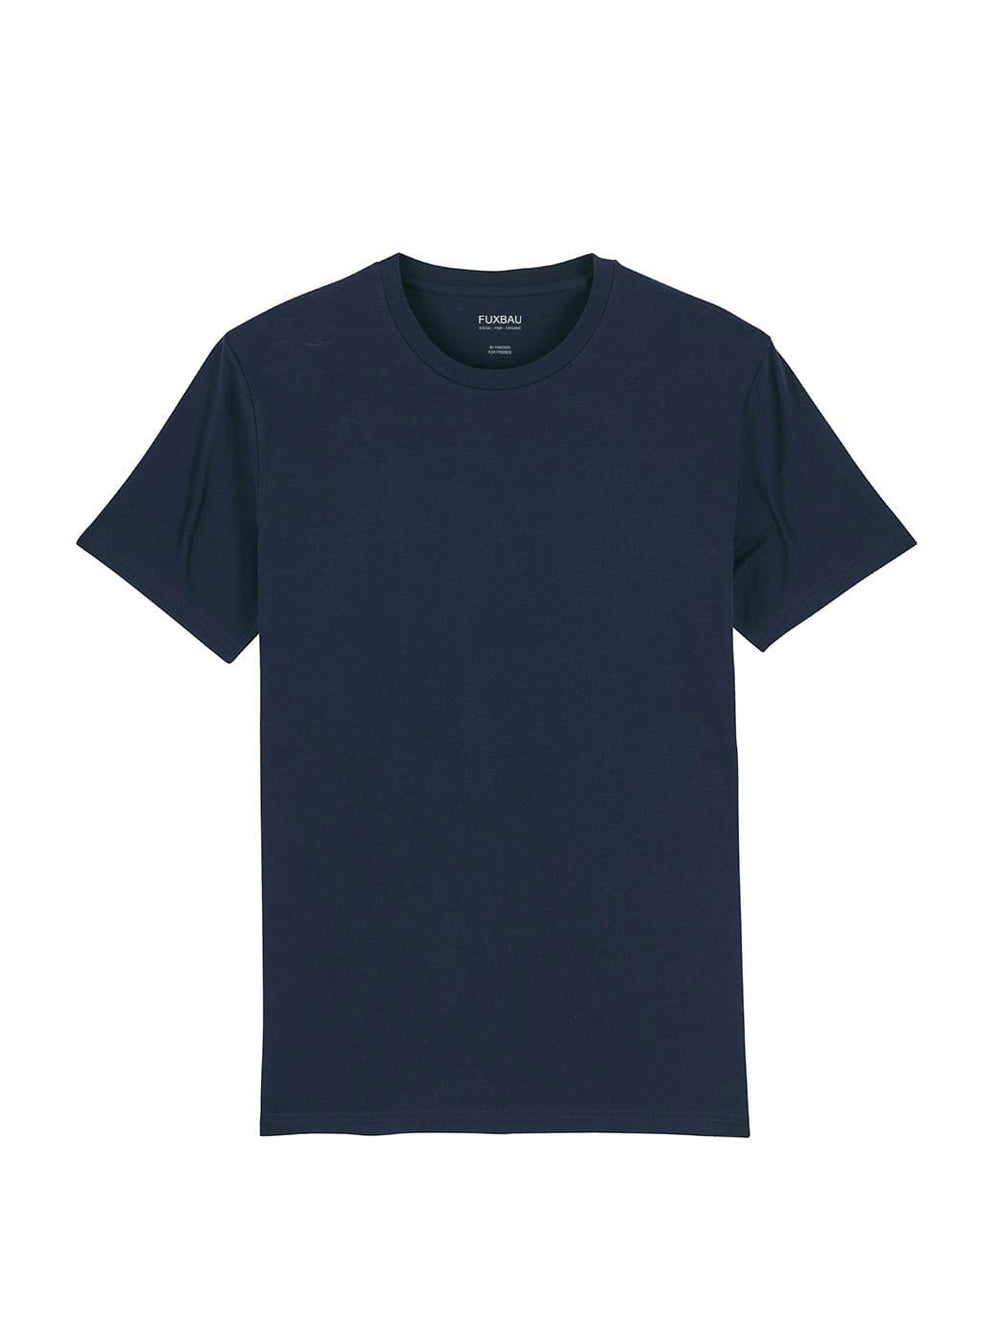 Nachhaltiges Fair Fashion Unisex Standard Basic T-Shirt in navy im von FUXBAU aus 100% GOTS zertifizierter Biobaumwolle im 3er Pack.